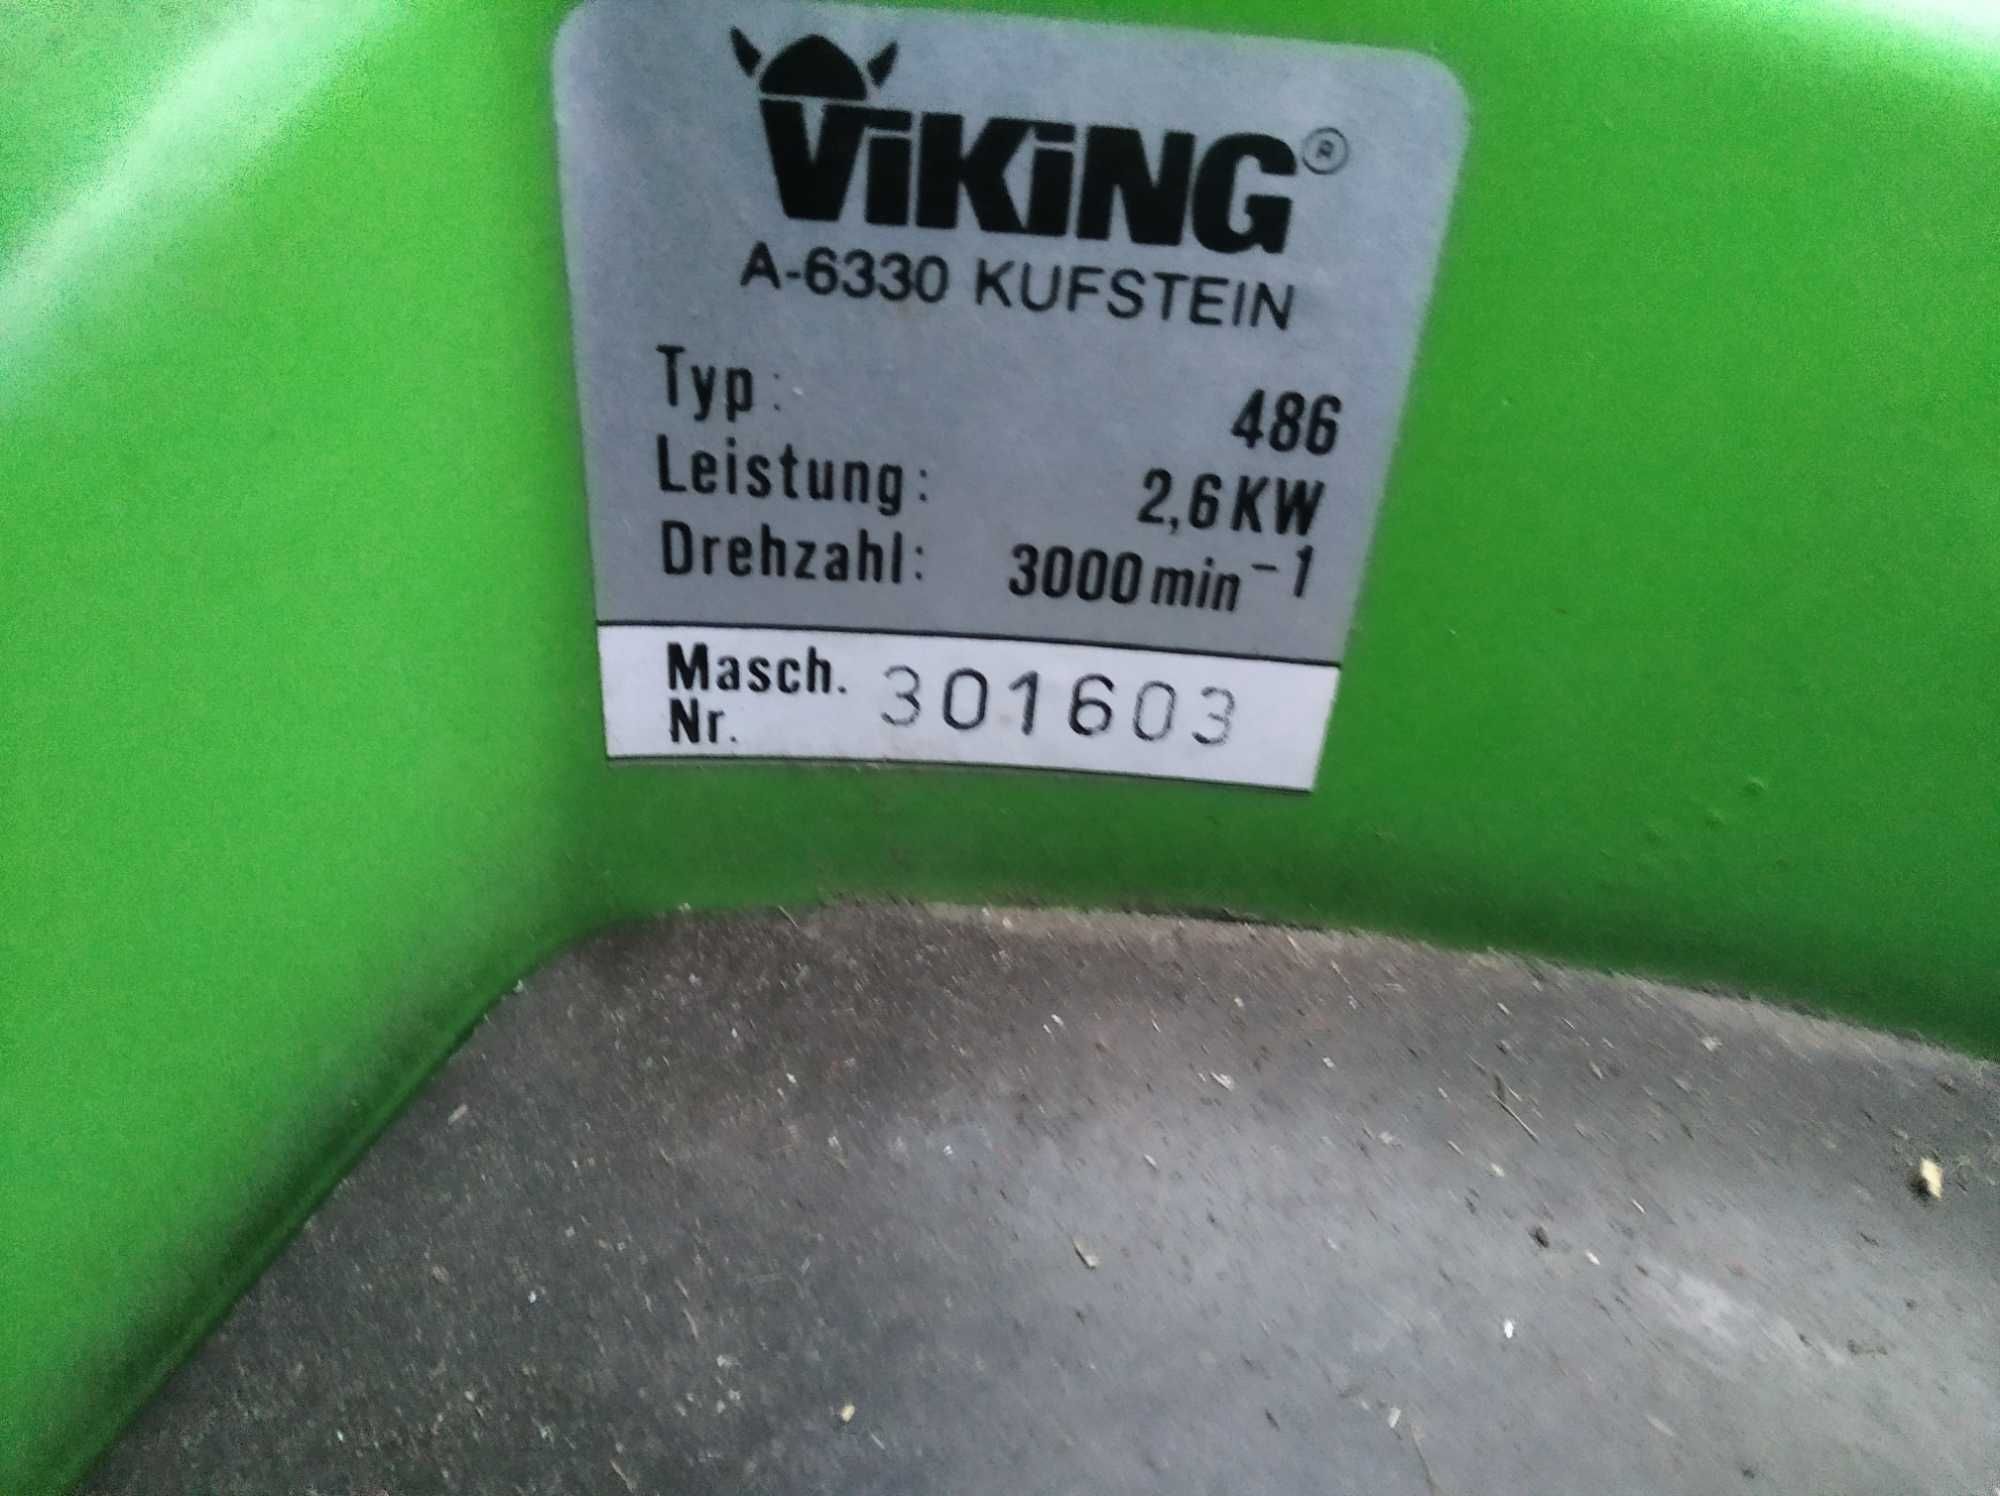 Kosiarka spalinowa Viking 486 z napędem 2,6 KW